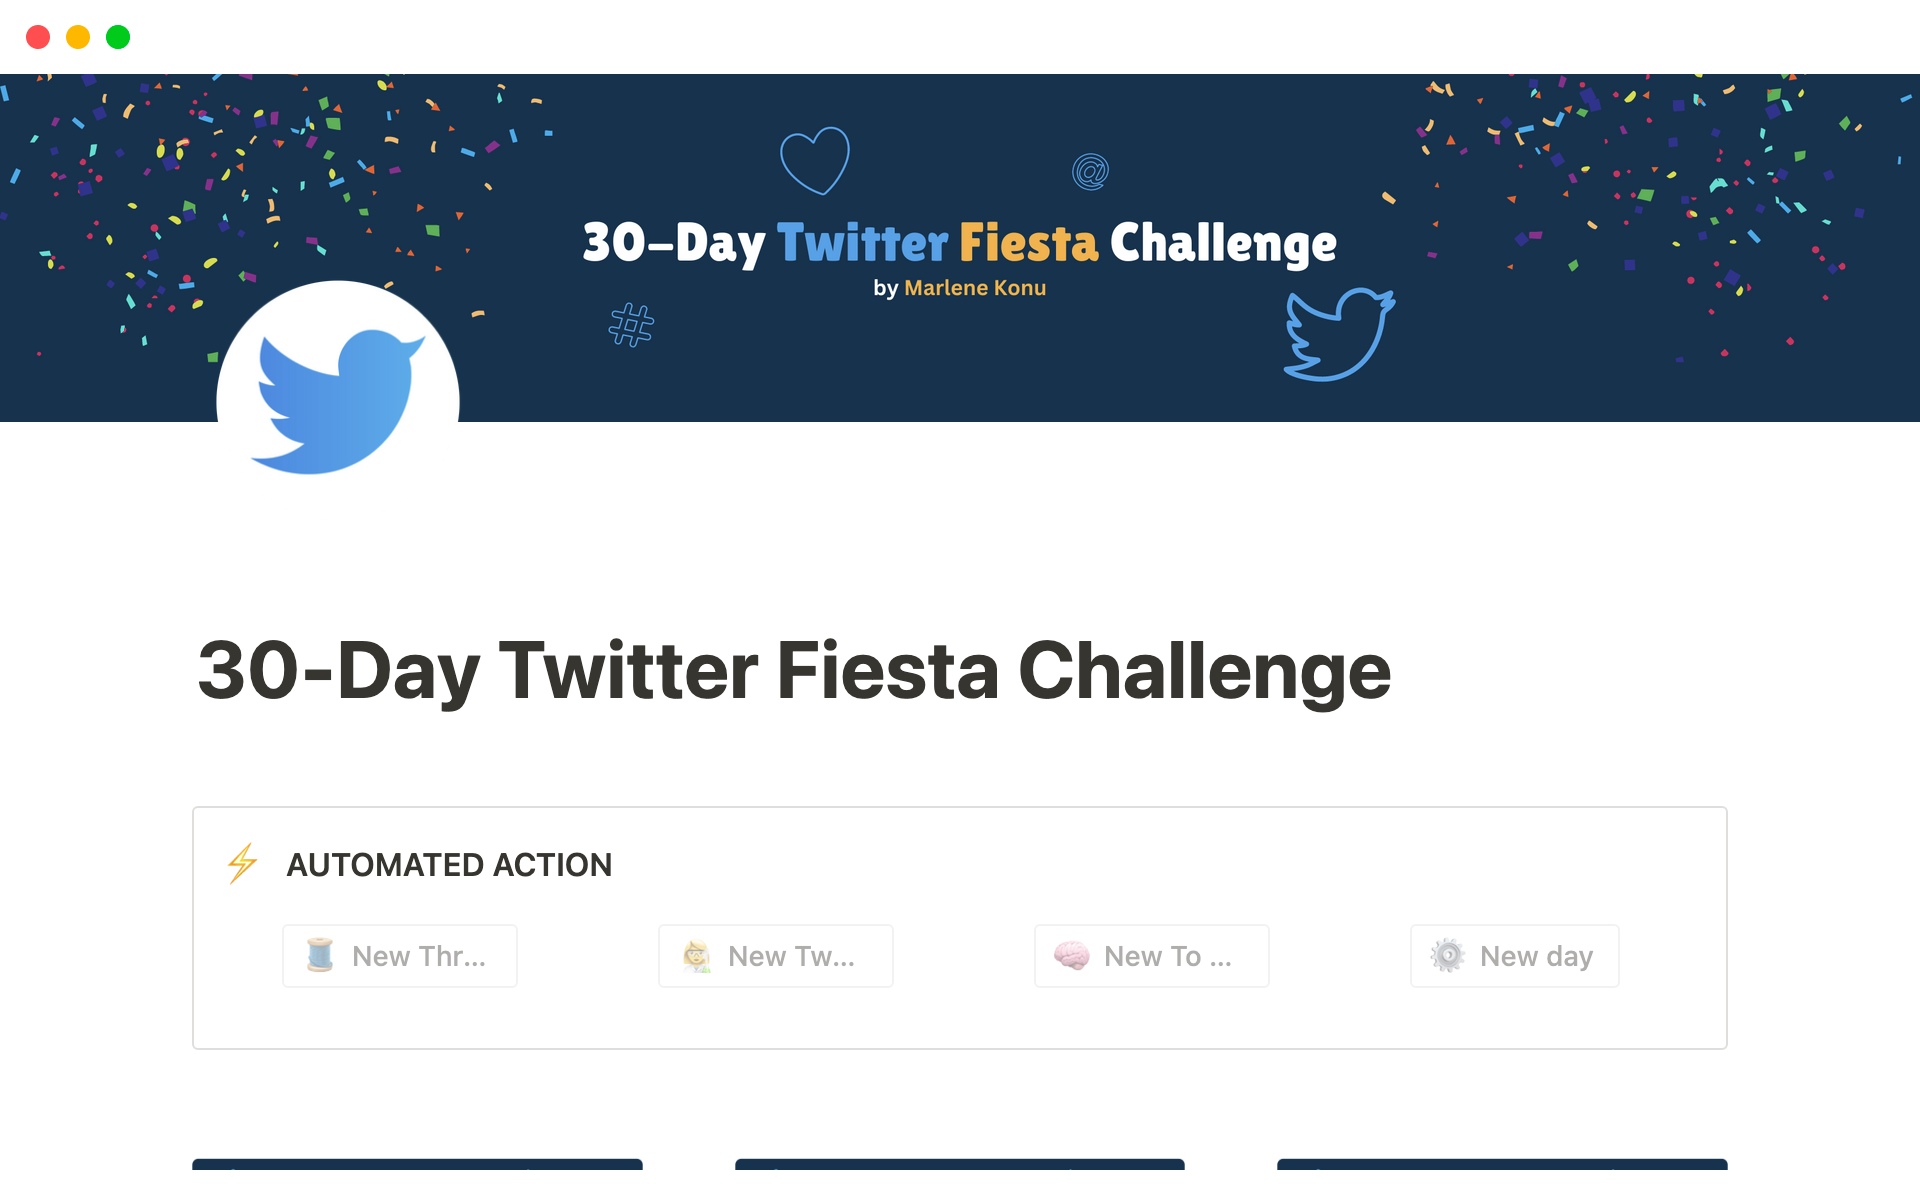 Aperçu du modèle de 30-Day Twitter Fiesta Challenge